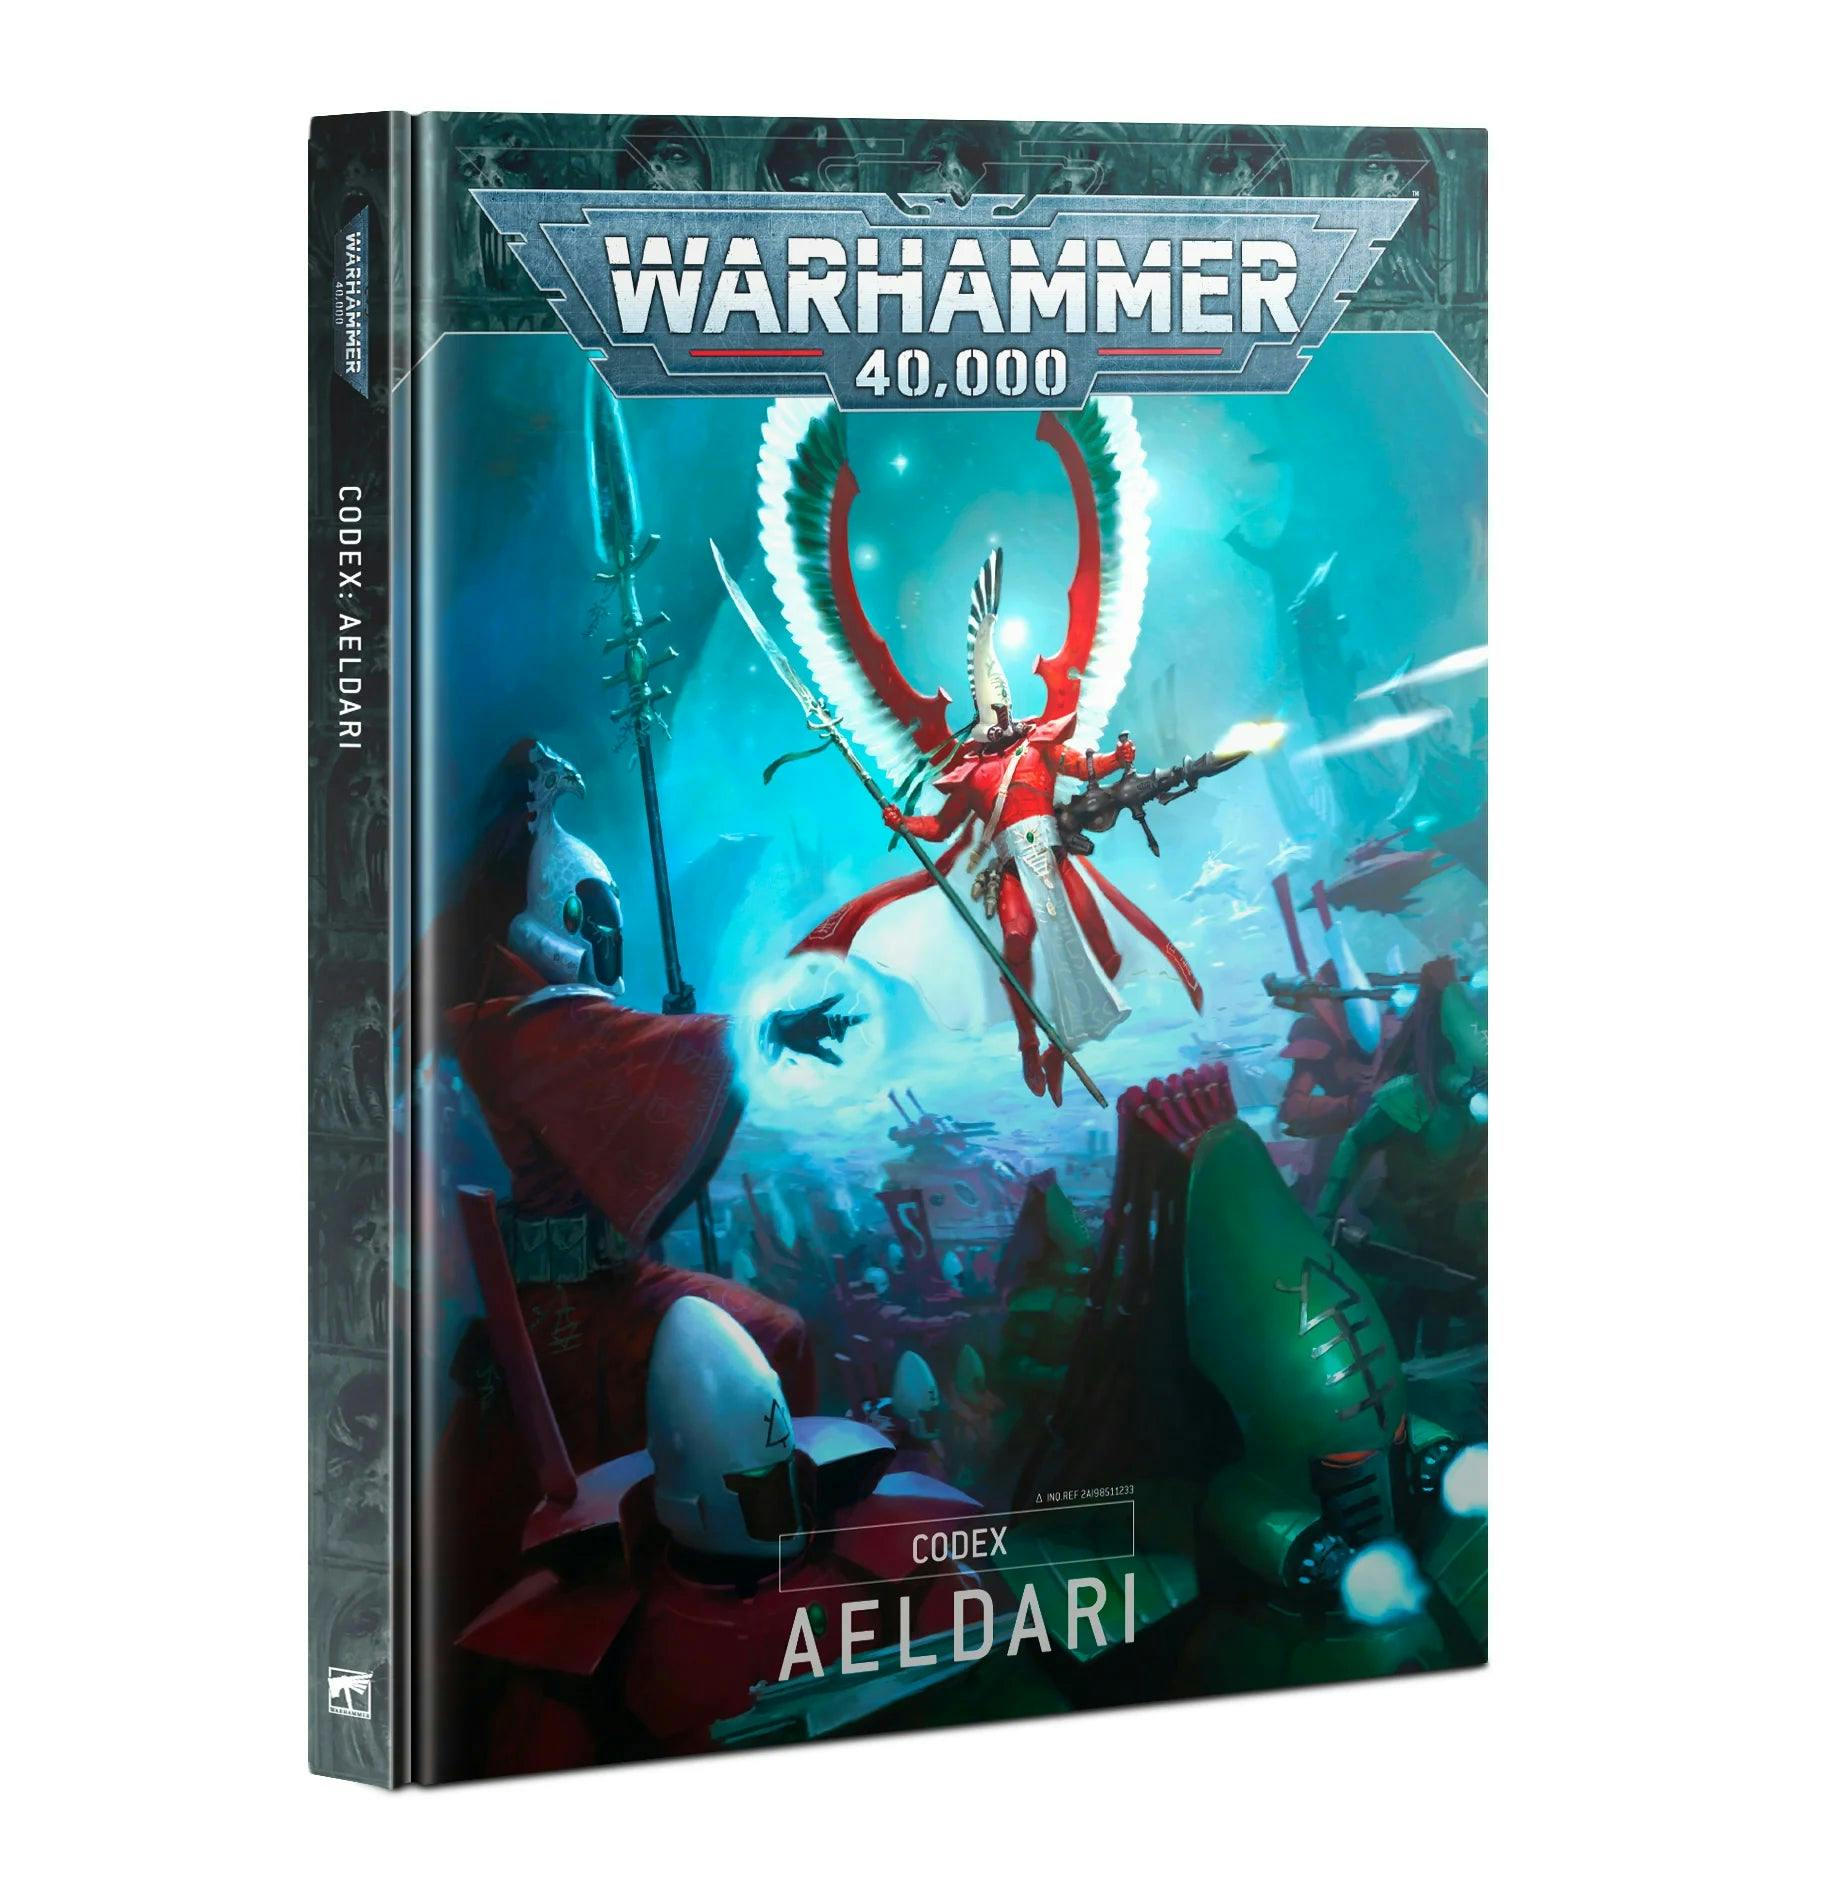 Warhammer 40,000: Aeldari - Codex